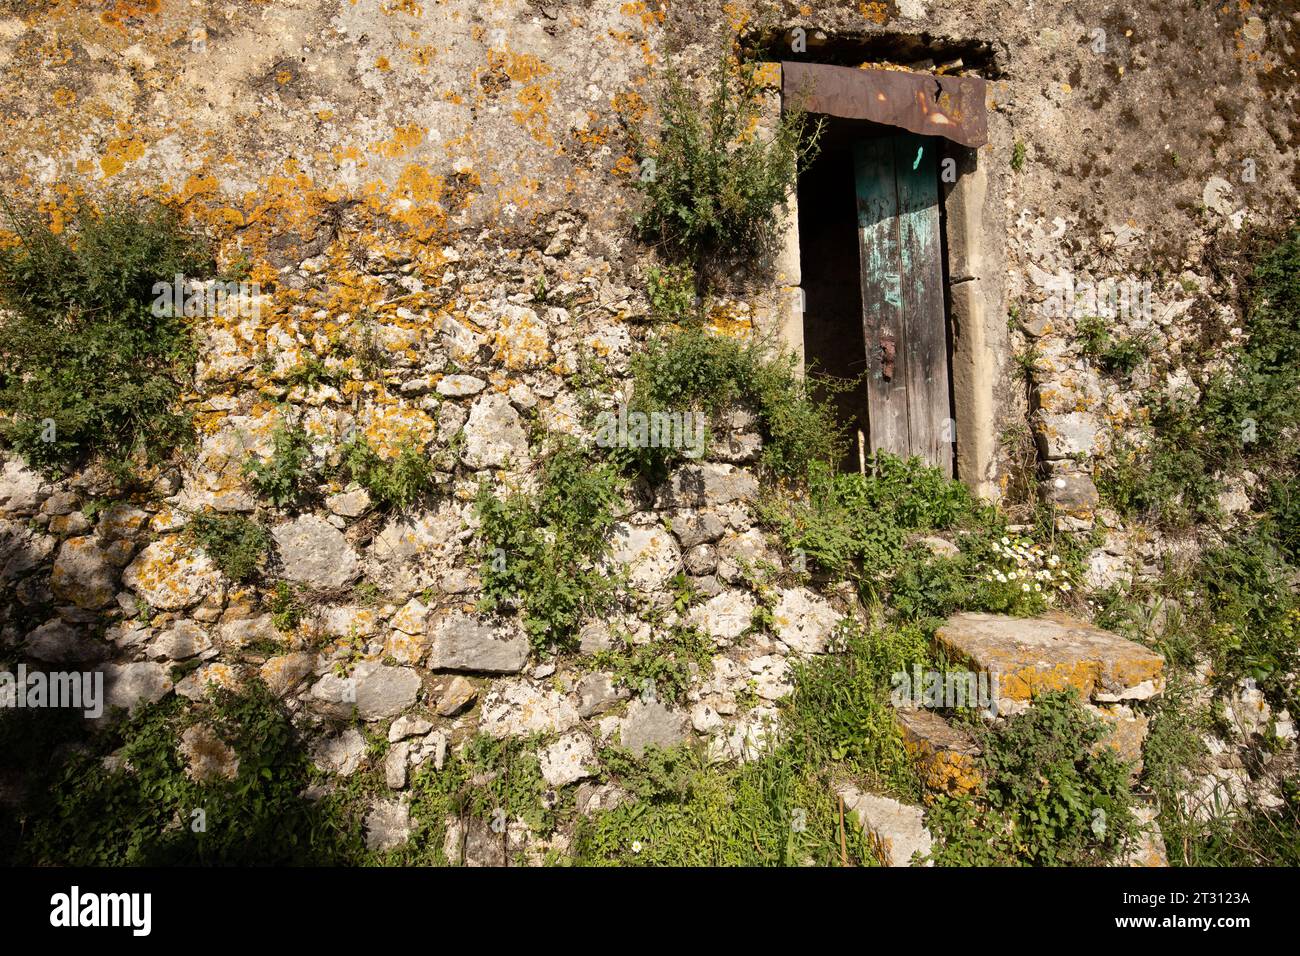 Una casa abbandonata in una parte rurale di Corfù, dove gli effetti dell'abbandono rurale, con la gente che si trasferisce nelle città sono evidenti. La natura è la vincitrice. Foto Stock